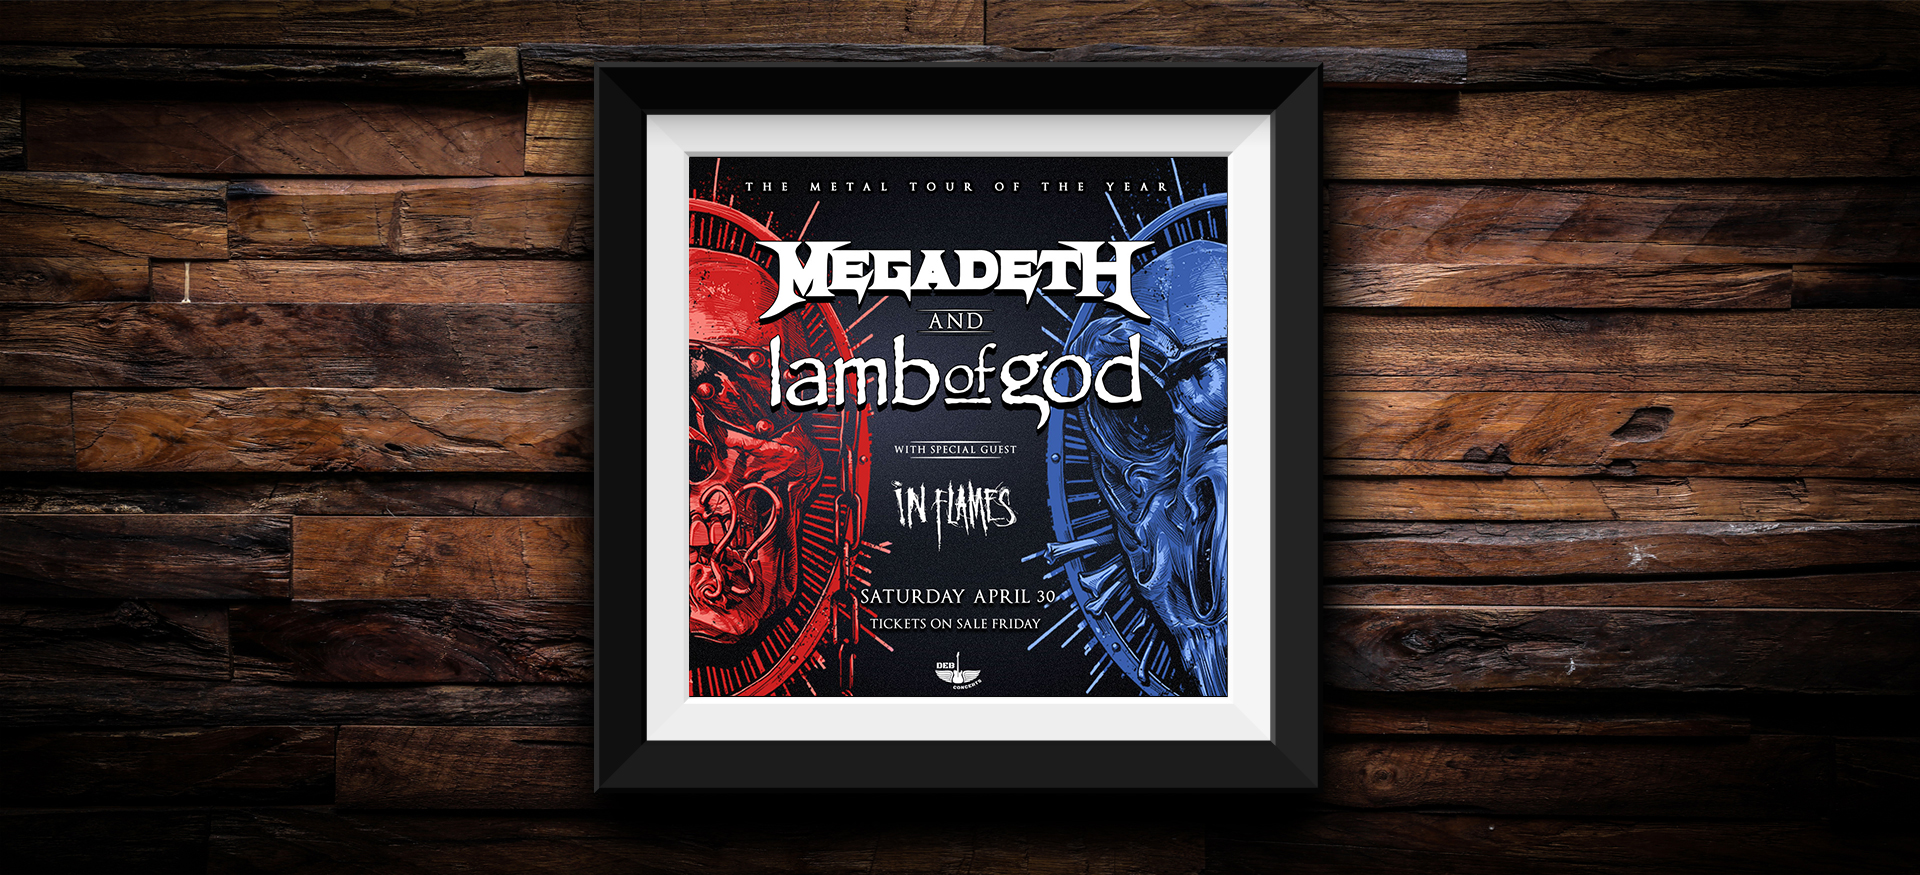 DEB Concert | BOK MEGADETH and Lamb of God